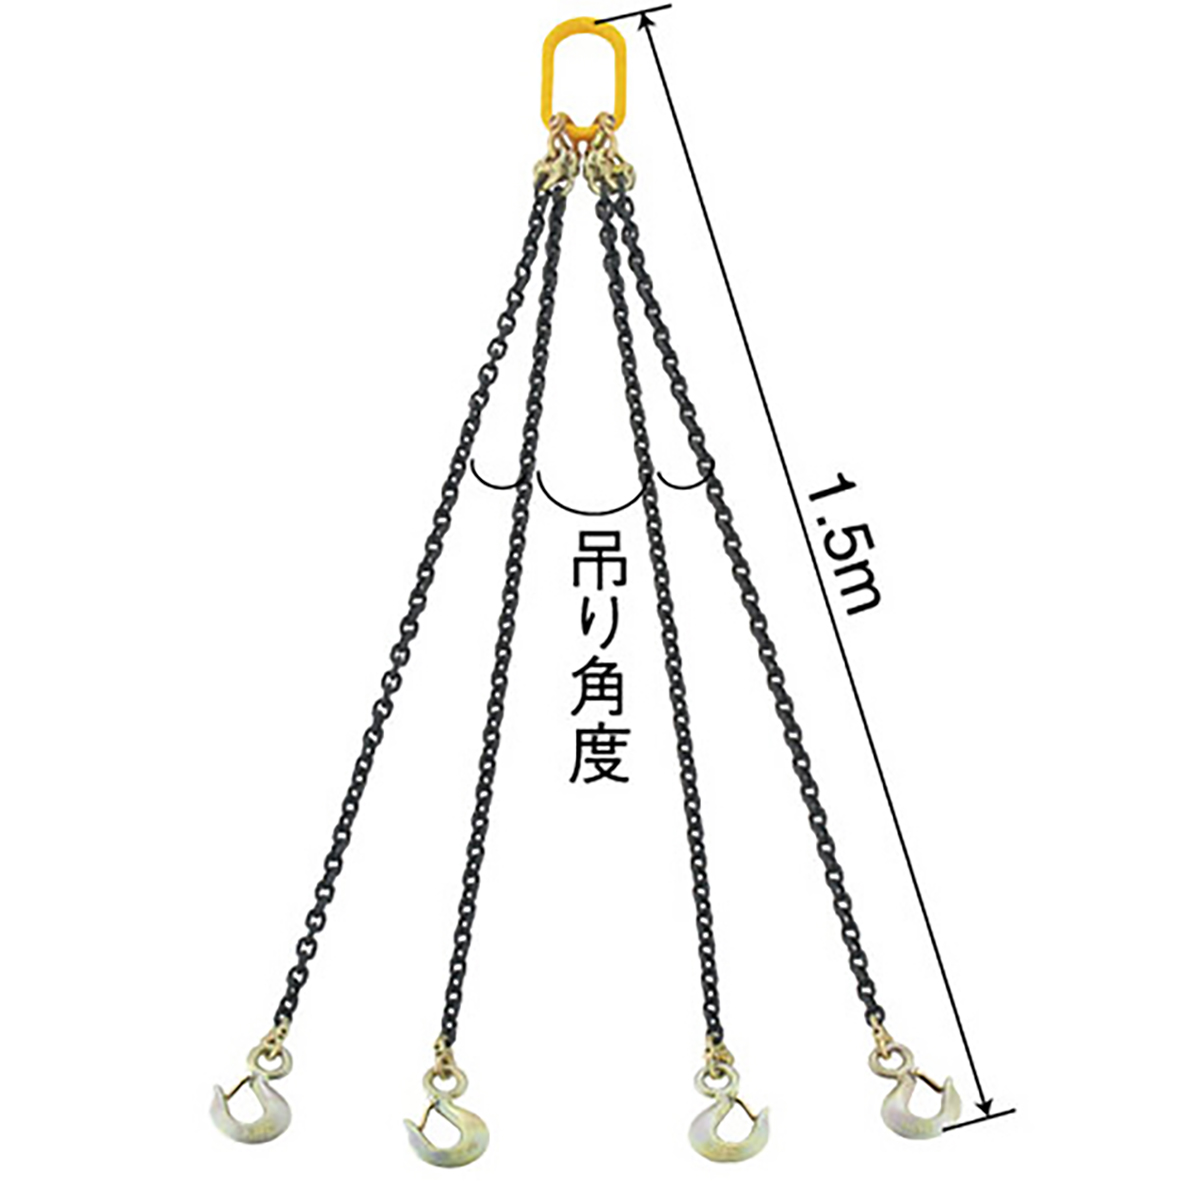 スリングチェーン 3t 4本吊り 耐荷重3t 吊りクランプ 吊りベルト